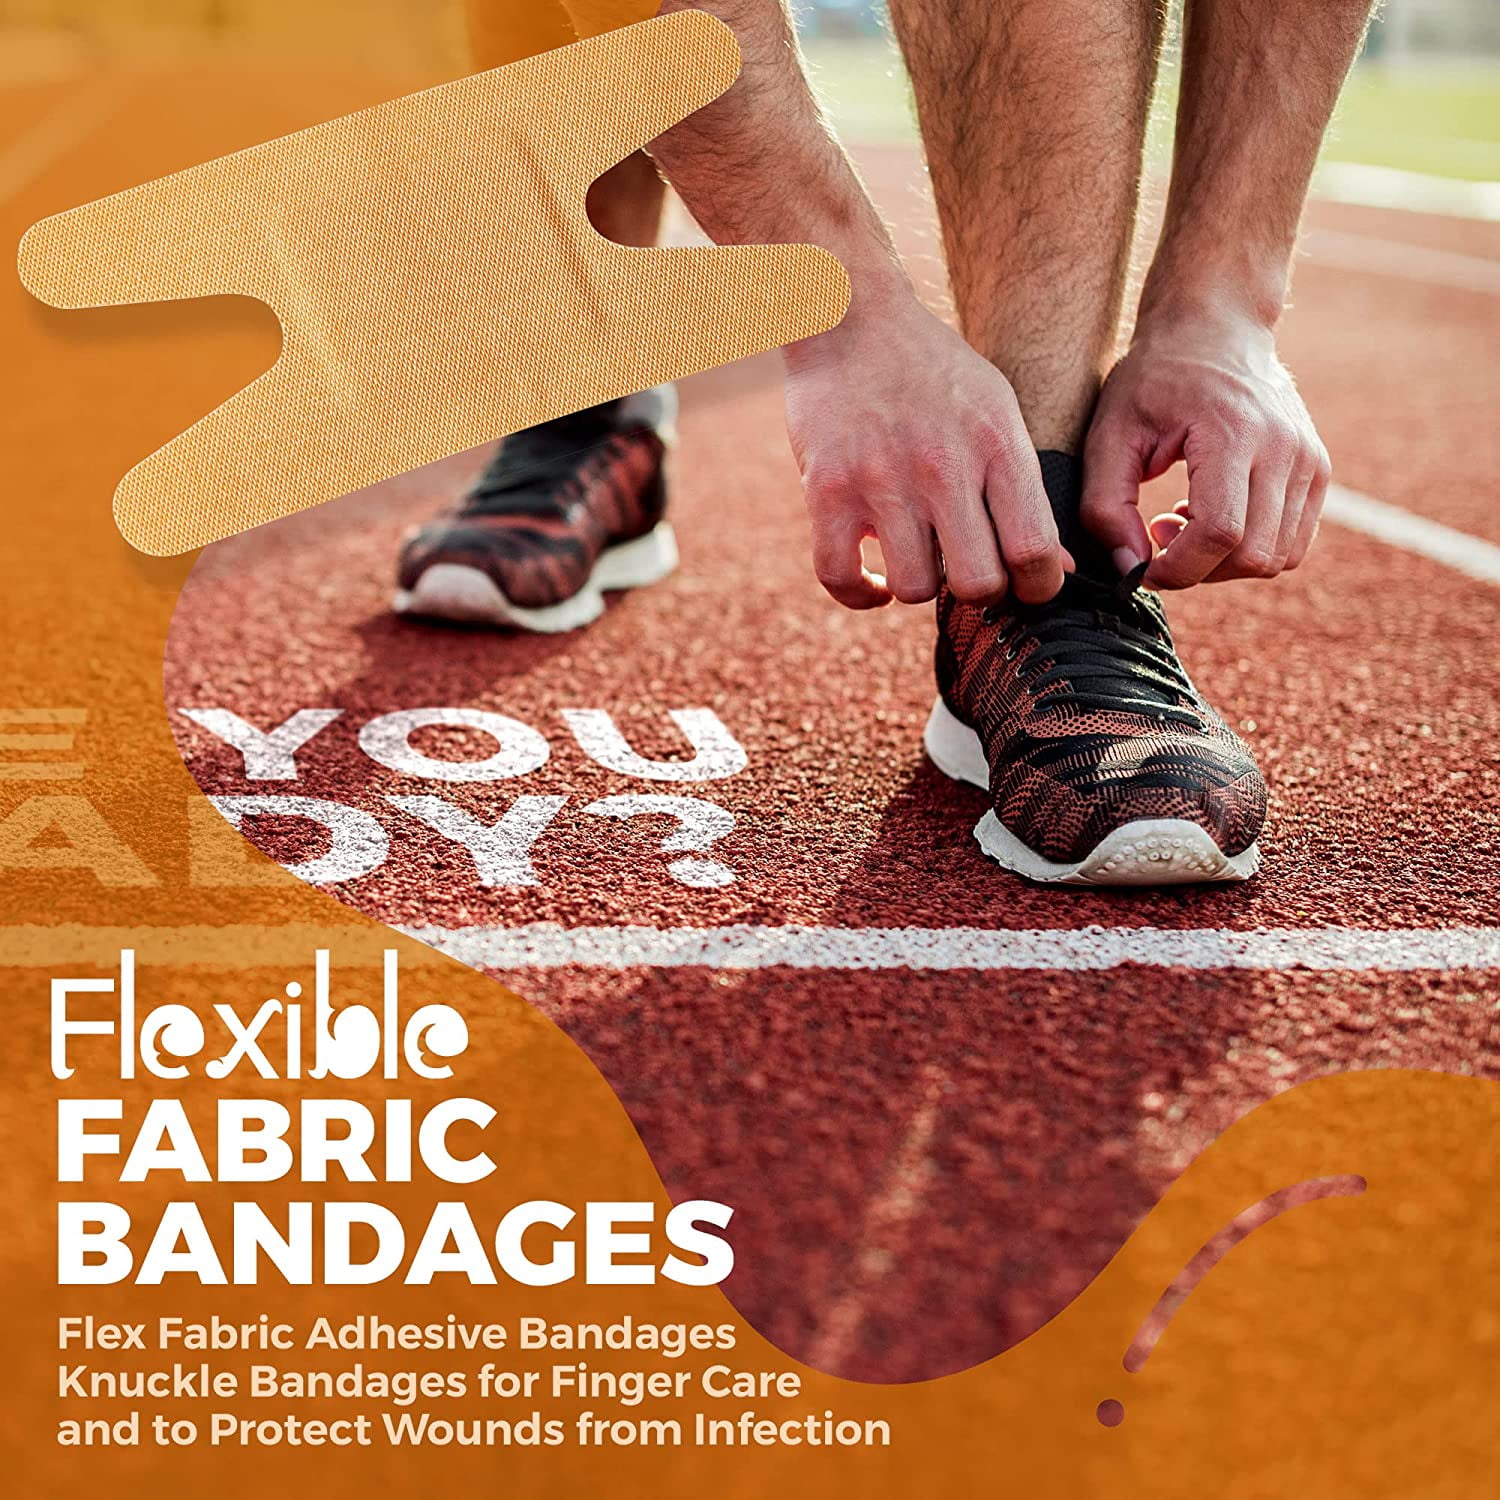 Flexible Fabric Bandages - Flex Fabric Adhesive Bandages Knuckle